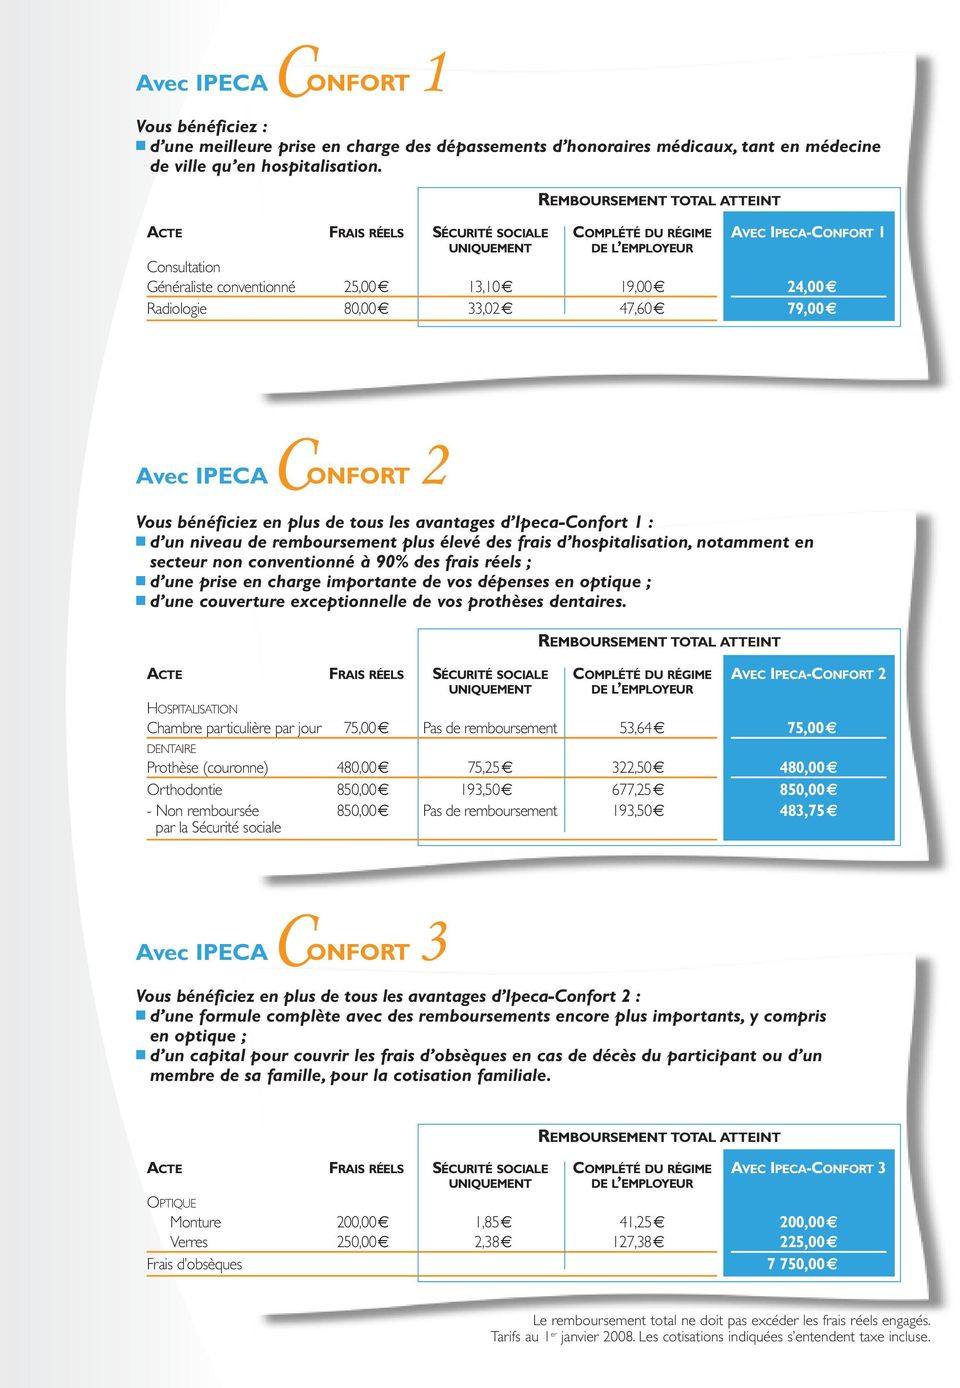 IPECA-CONFORT 1 24,00 79,00 C 2 Avec IPECA ONFORT Vous bénéficiez en plus de tous les avantages d Ipeca-Confort 1 : d un niveau de remboursement plus élevé des frais d hospitalisation, notamment en